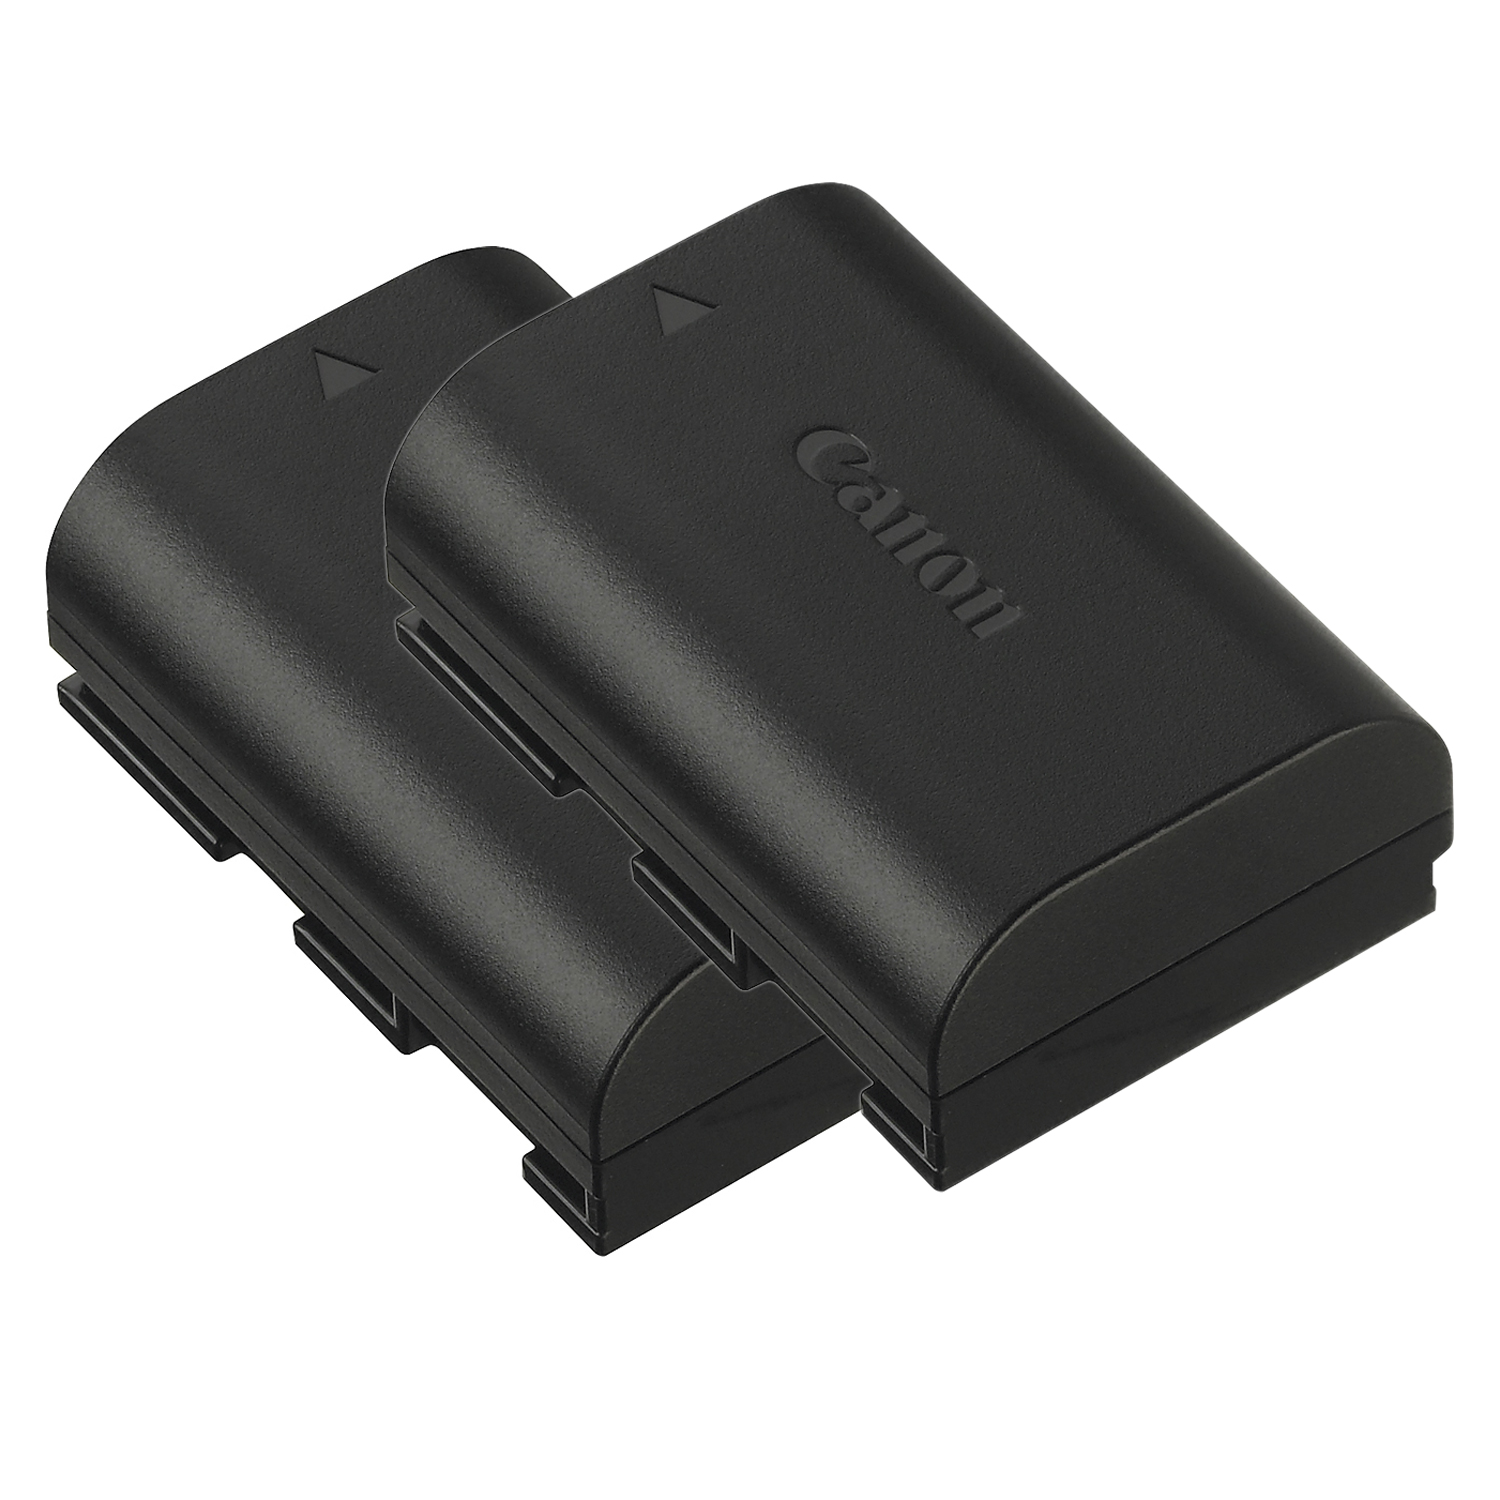 Canon EOS 5D Mark IV GPS WiFi NFC DSLR Camera Body + EXT BAT + Tripod - 64GB Kit - image 5 of 11